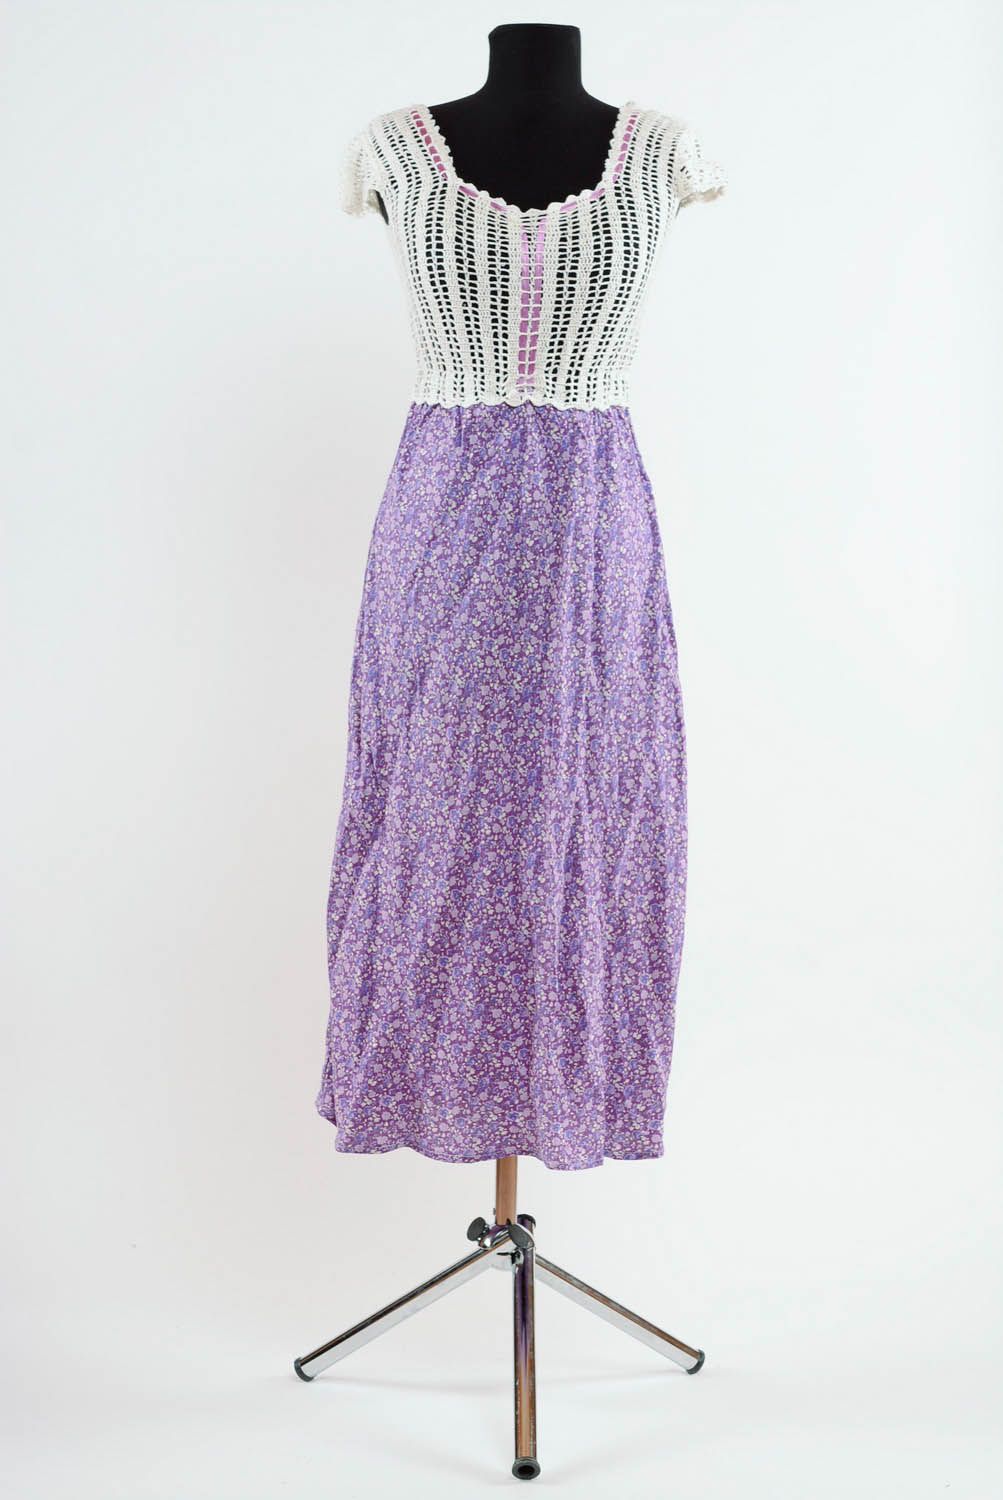 Платье вязаное крючком фото 1